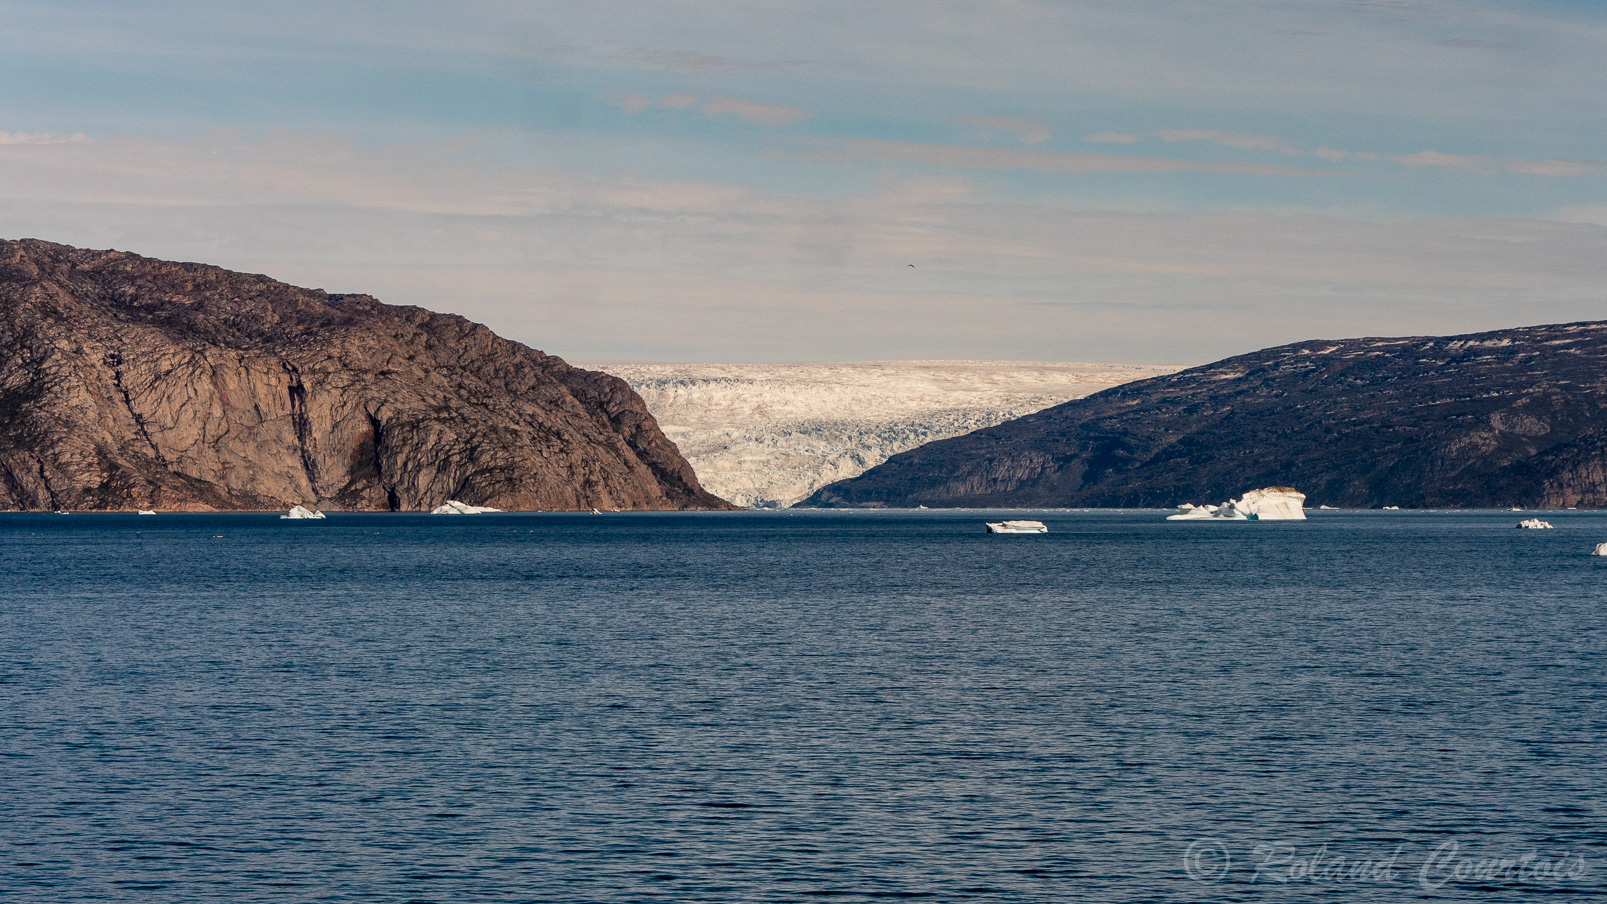 Le bateau s’engage dans le Fjord d’Ummanaq libre de glaces.